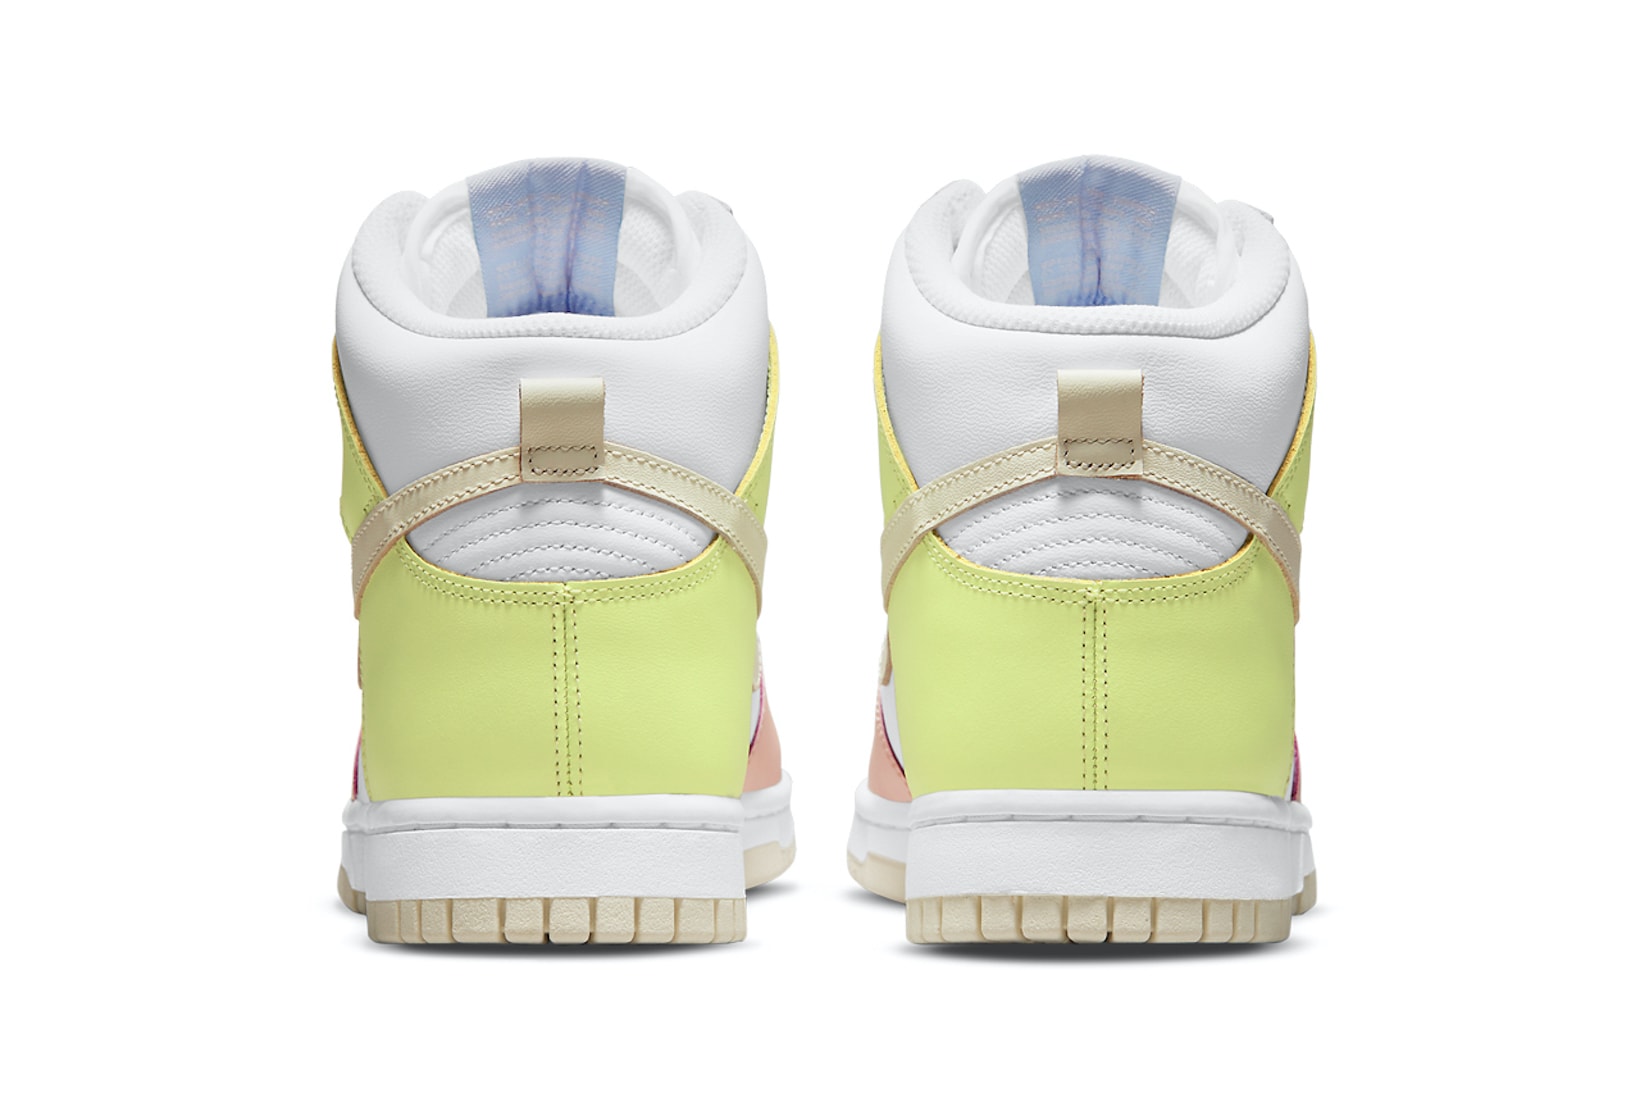 Nike Women's Dunk High Lemon Twist Sneakers Footwear Shoes Kicks Yellow Pink White Purple Heel